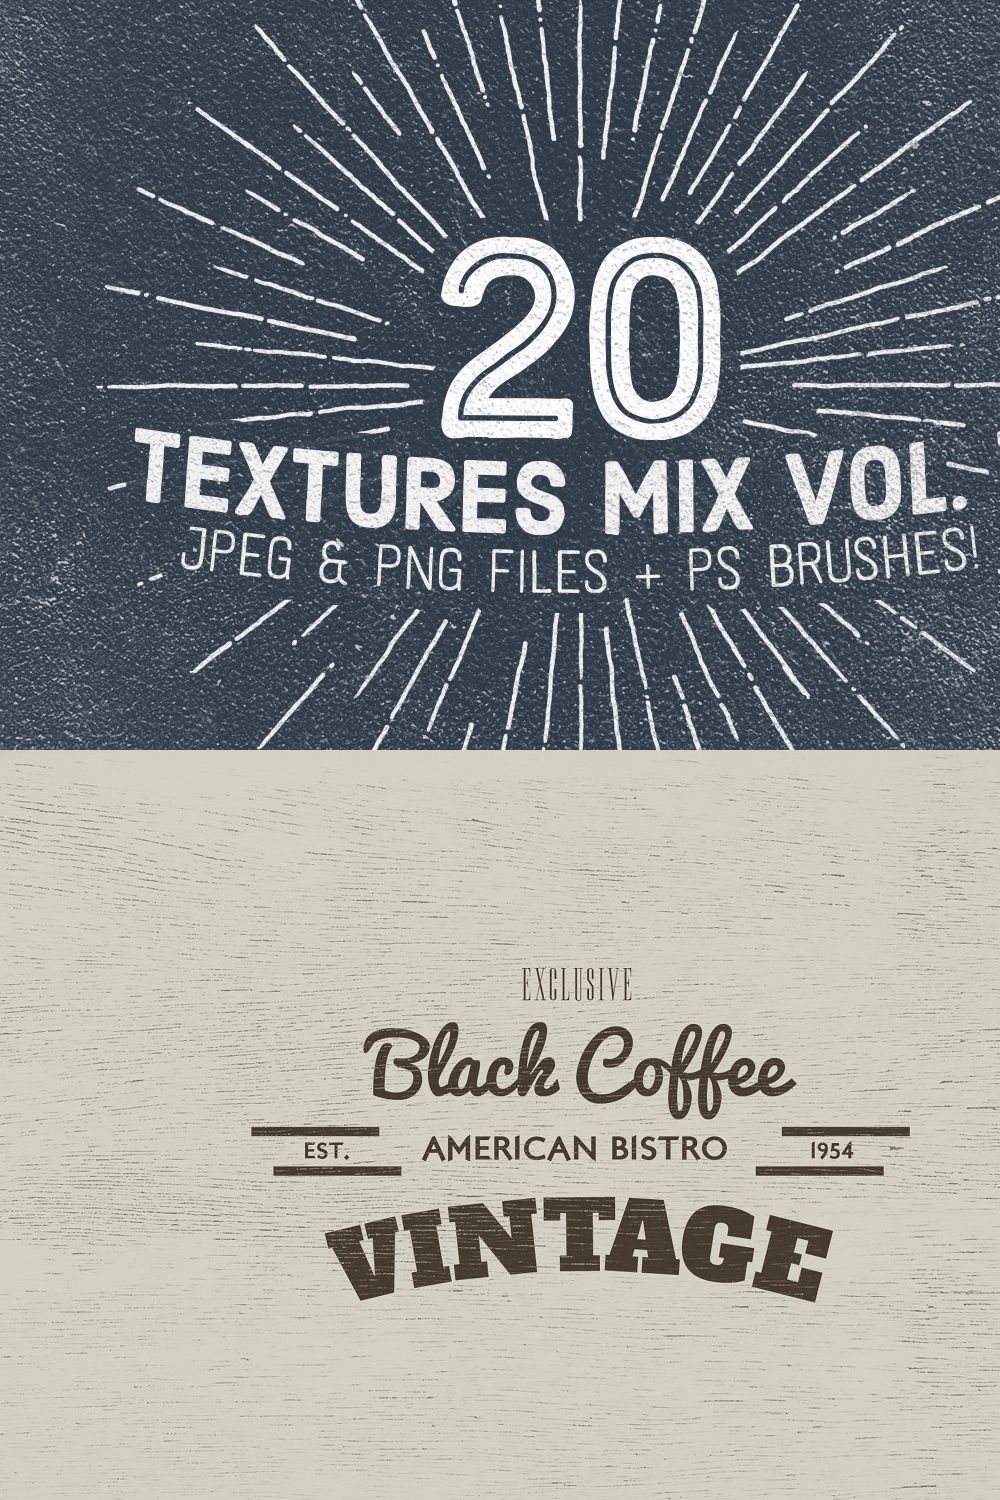 20 Textures Mix Vol. 1 pinterest preview image.